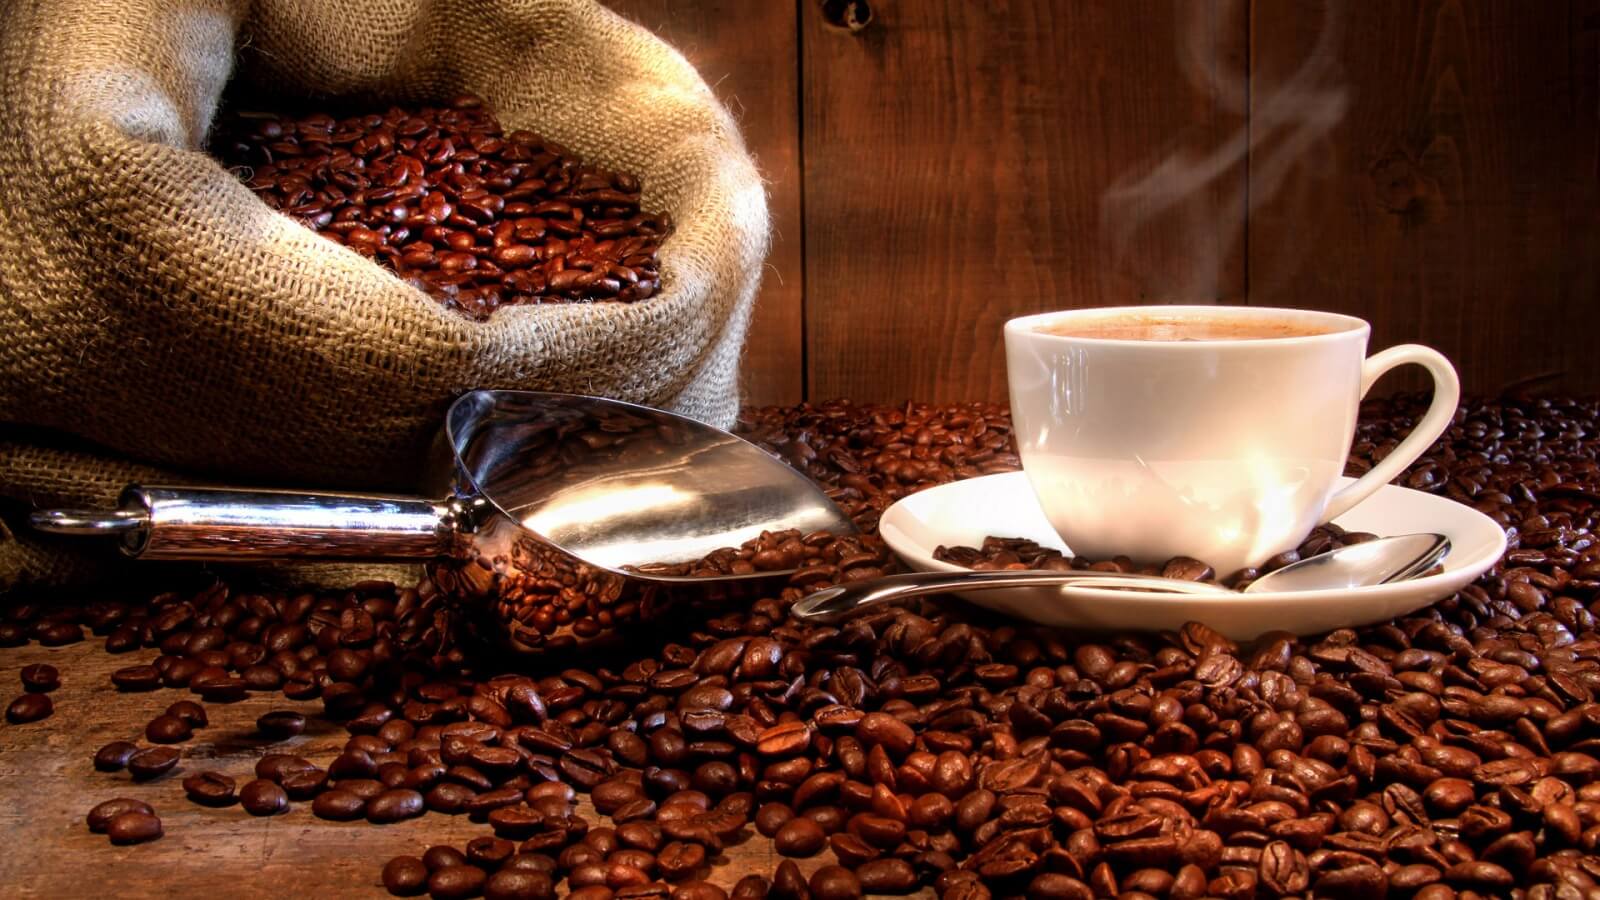 أضرار القهوة على الصحة قد تعرضك للكثير من الأمراض في حالة شربها بهذه الطريقة احذر